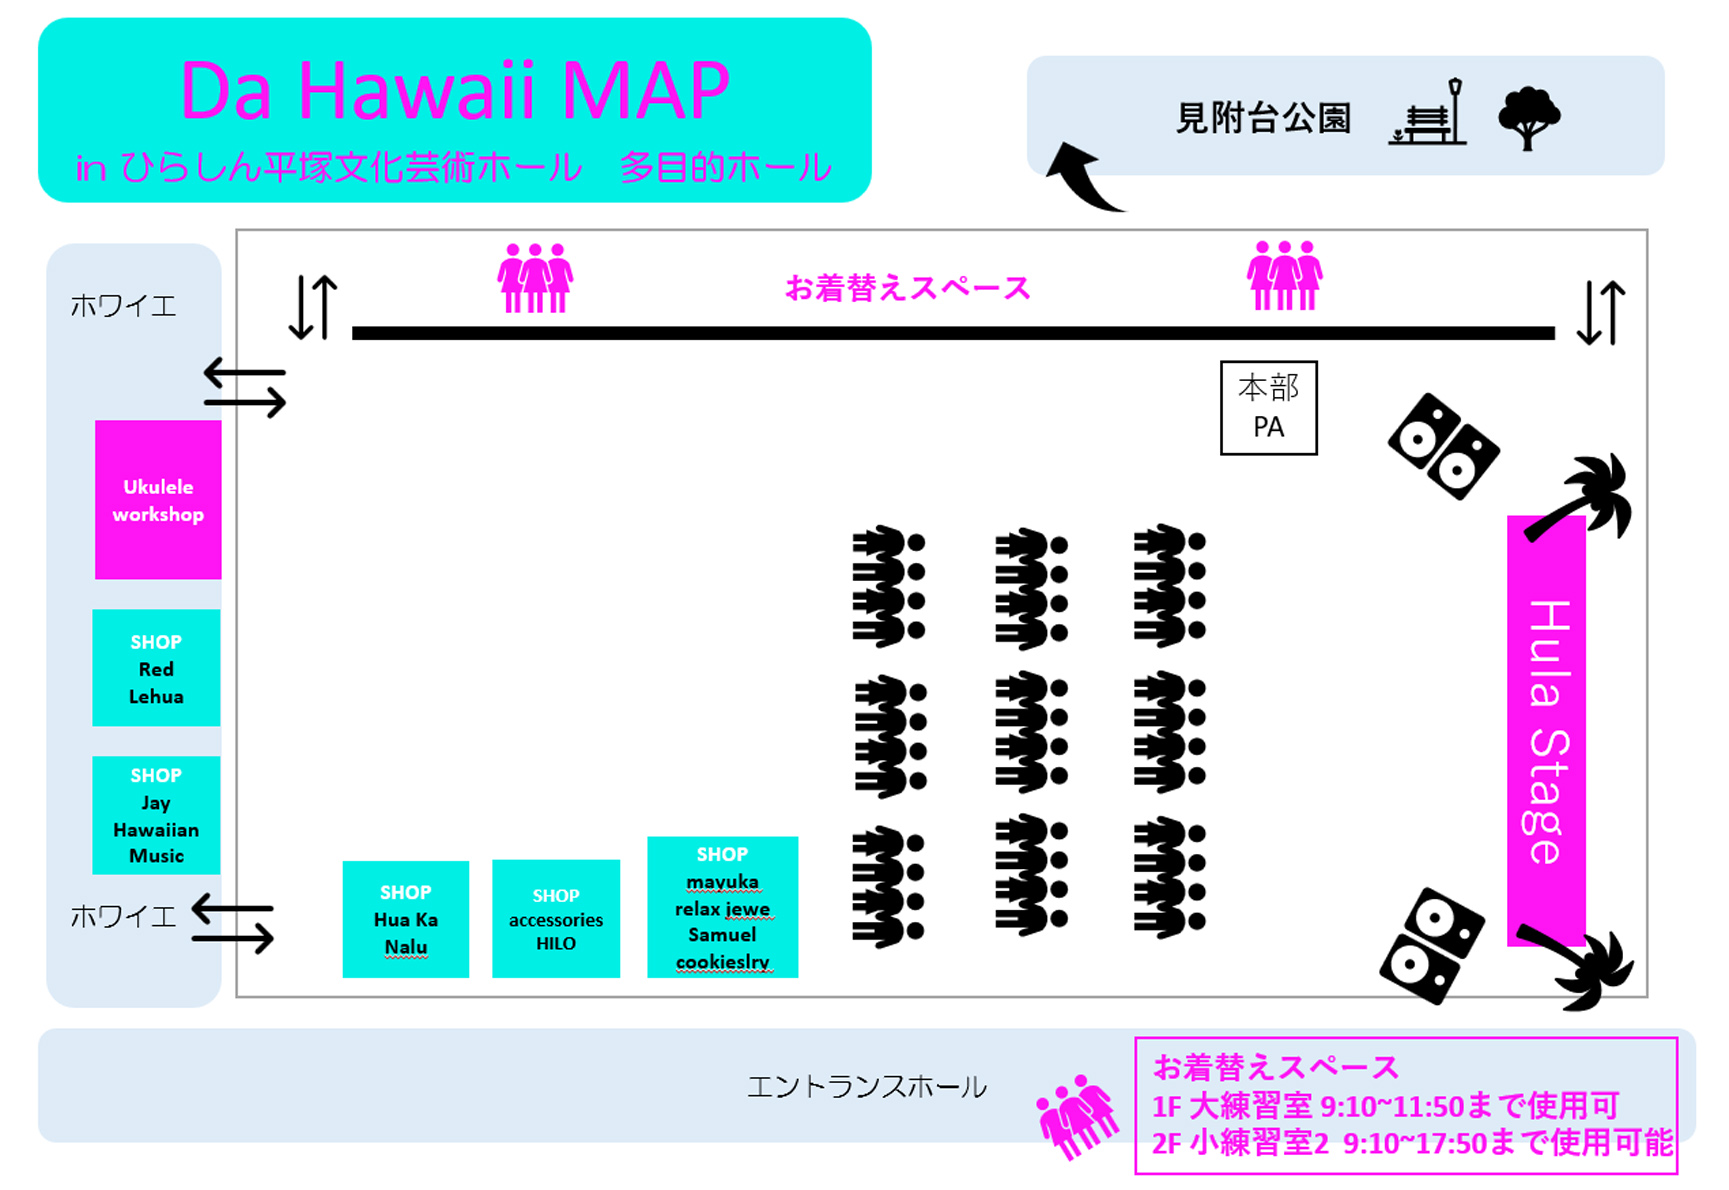 ひらしん平塚文化芸術ホール(多目的ホール)MAP